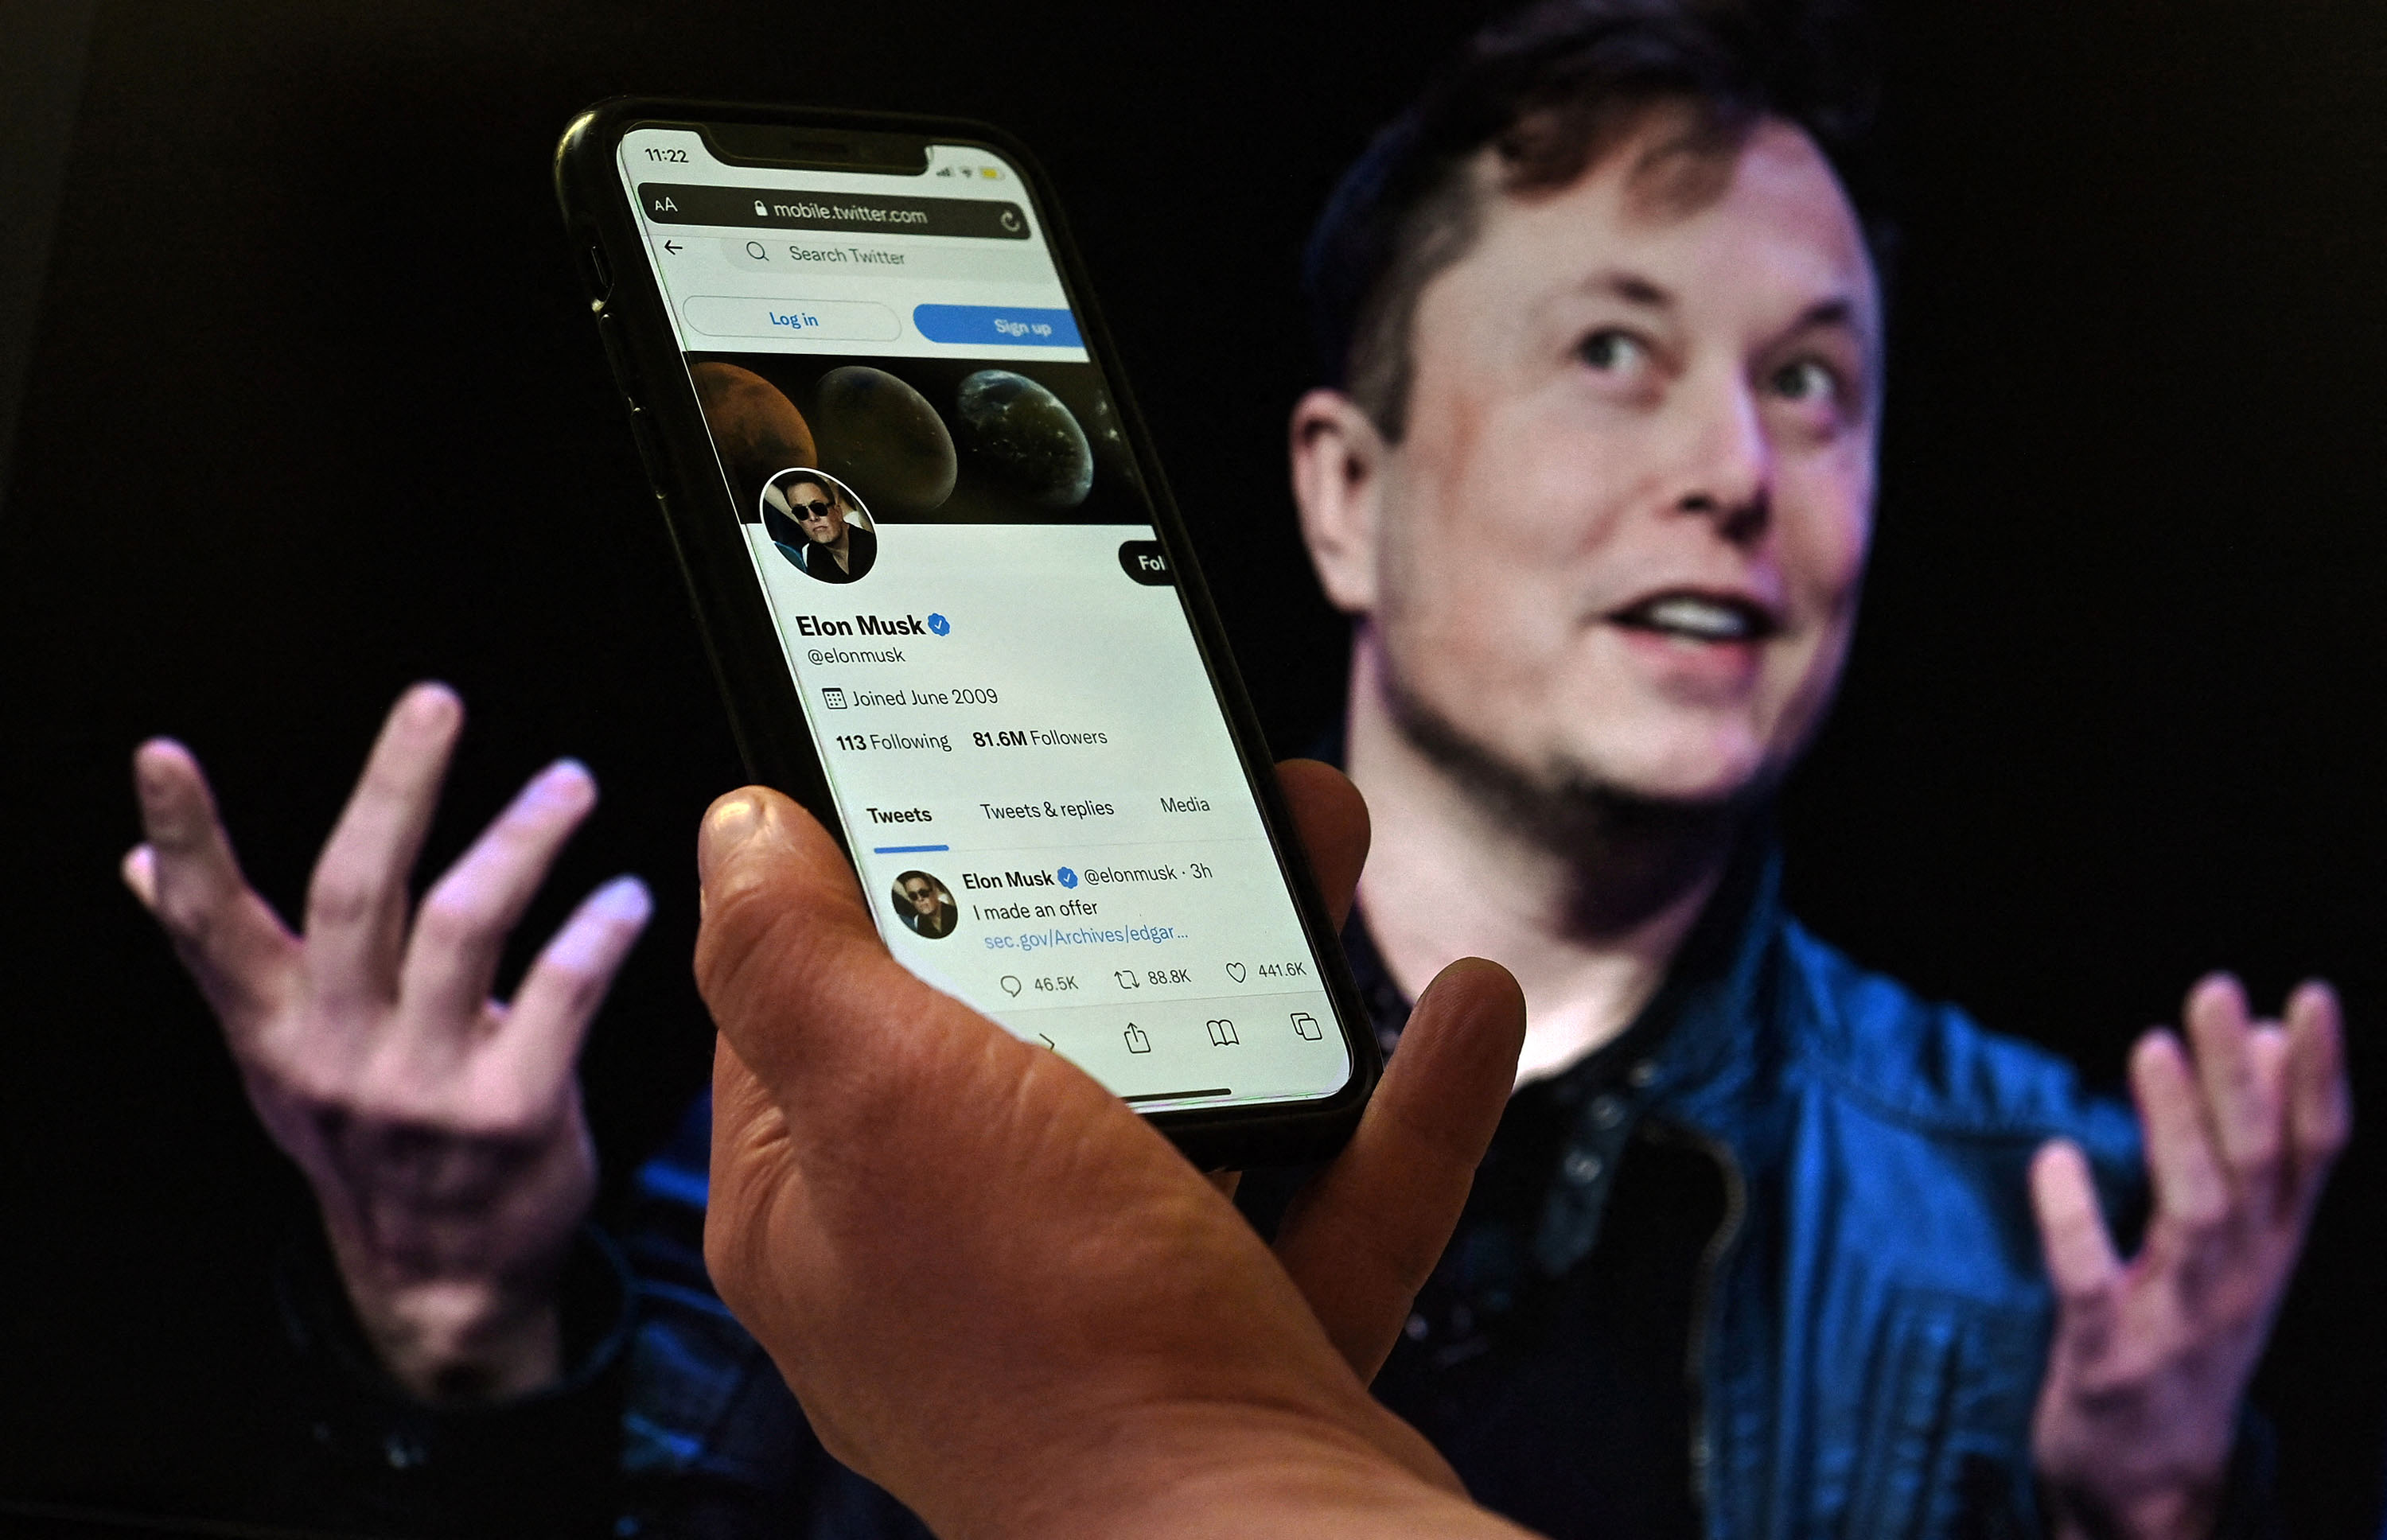 Twitter confirmó su venta a Elon Musk por 44 mil millones de dólares